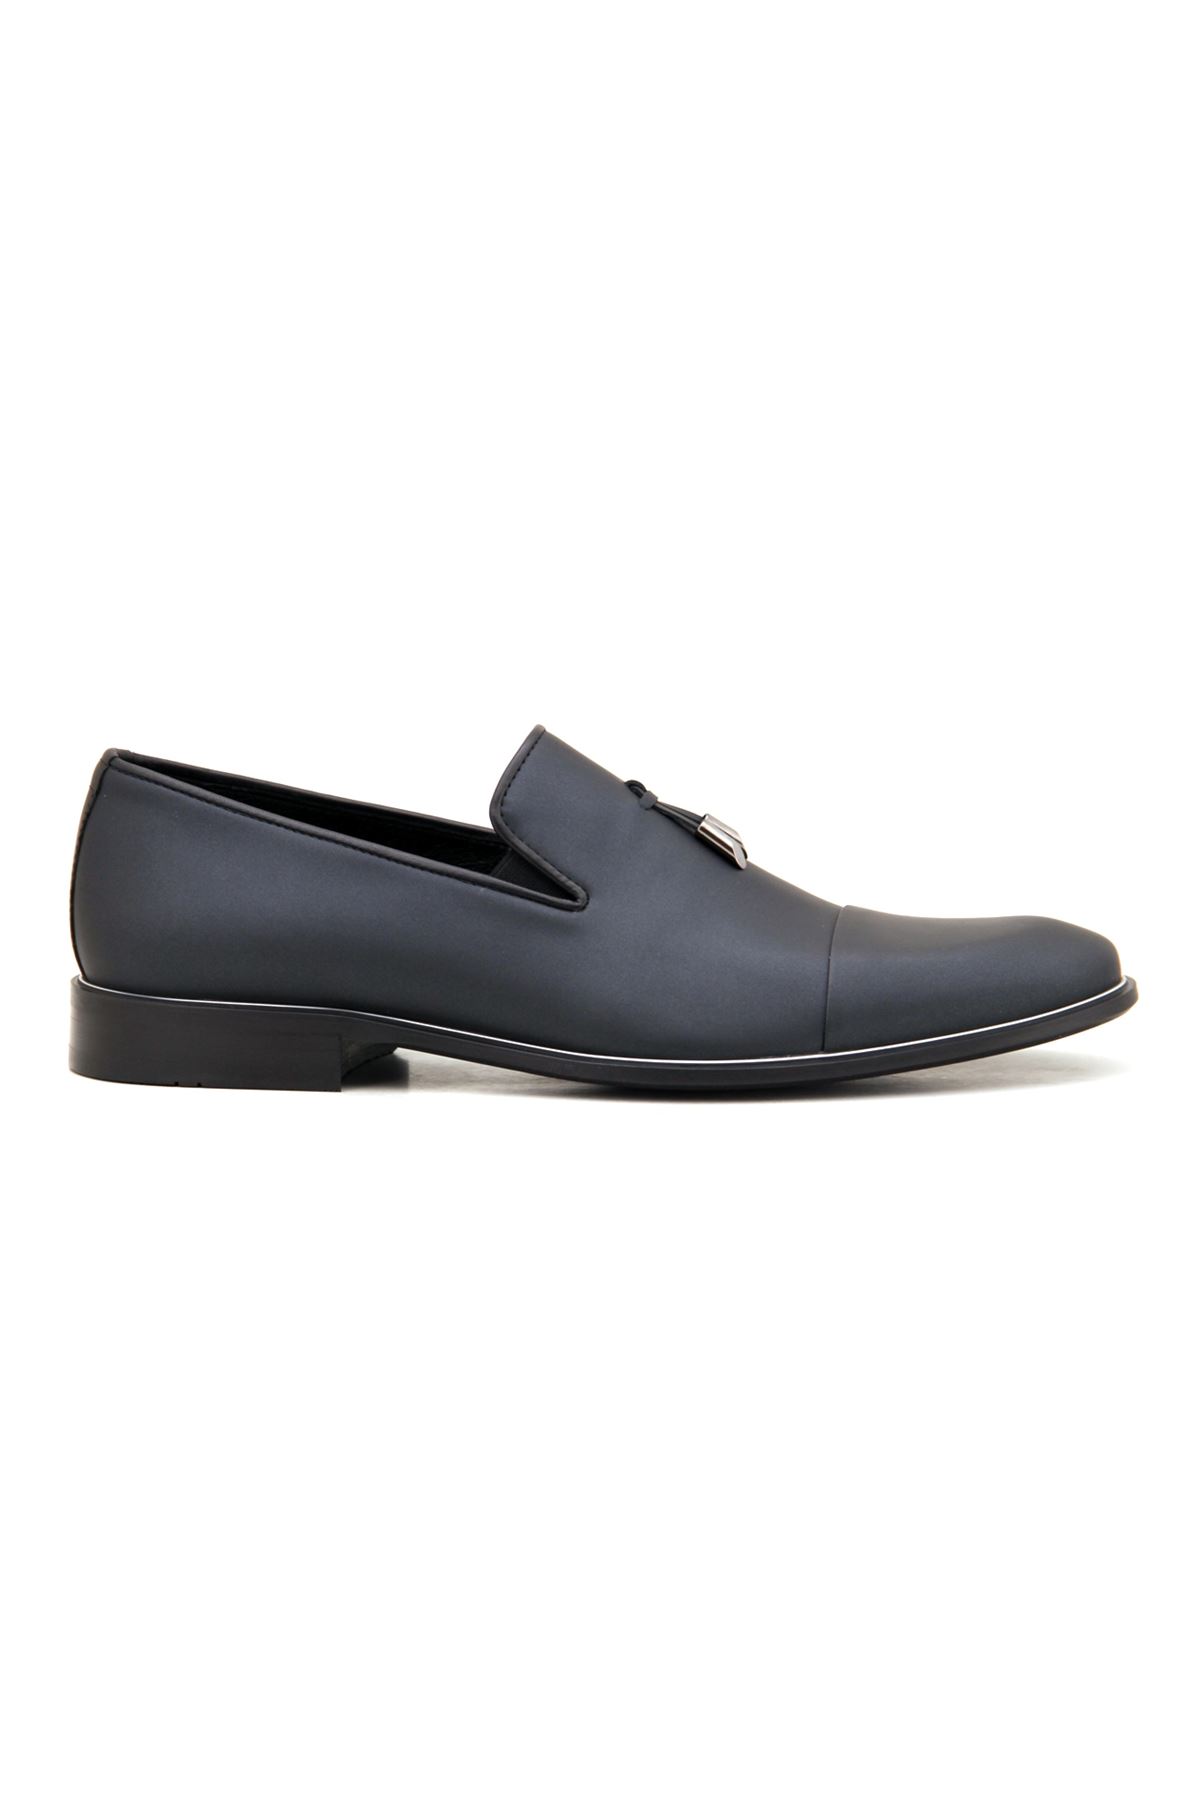 Libero 2385 Klasik Erkek Ayakkabı - Siyah